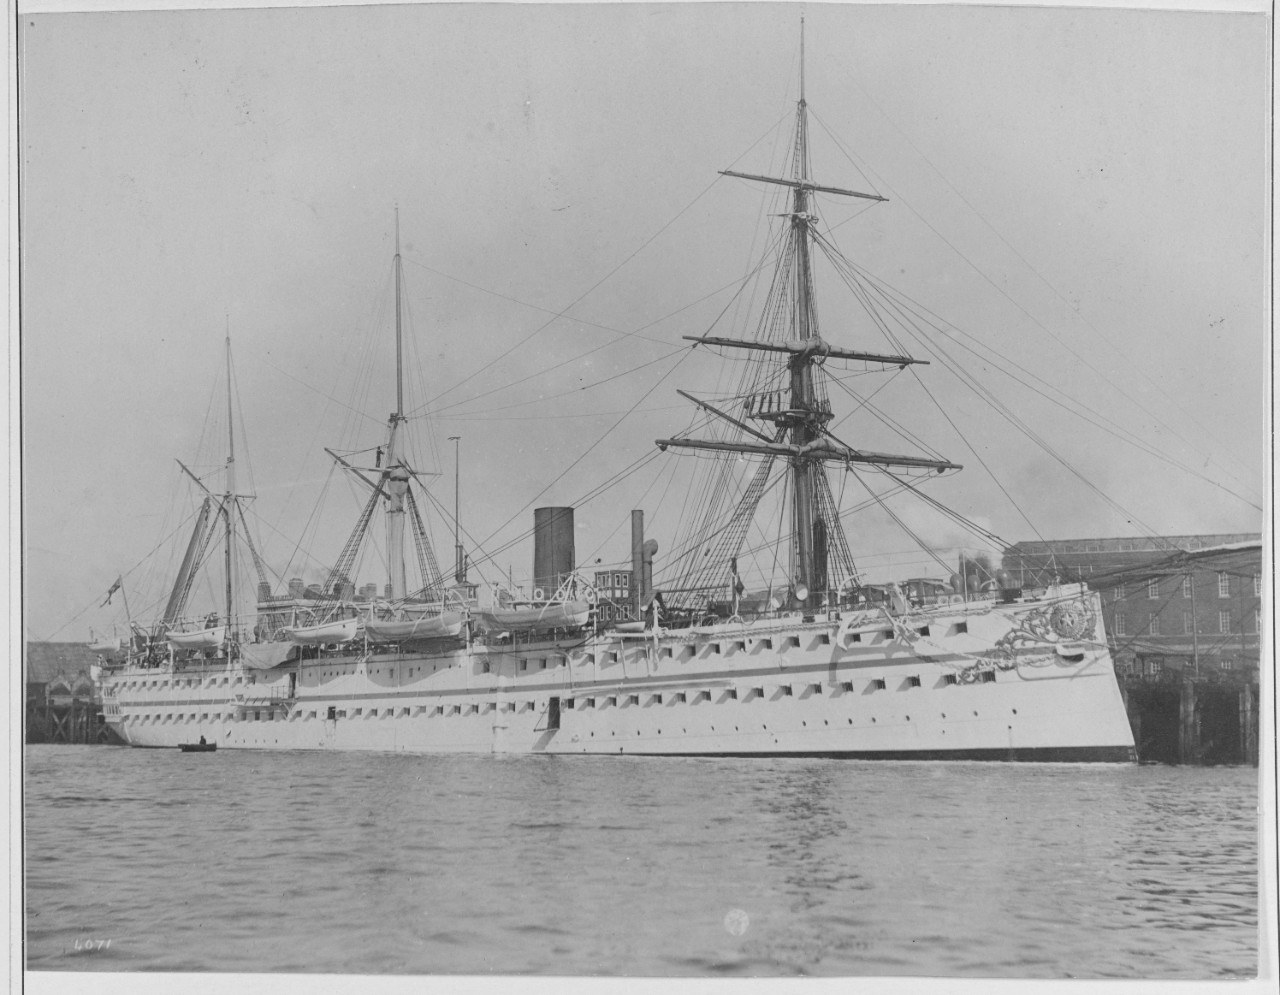 HMS EUPHRATES British Transport, 1866